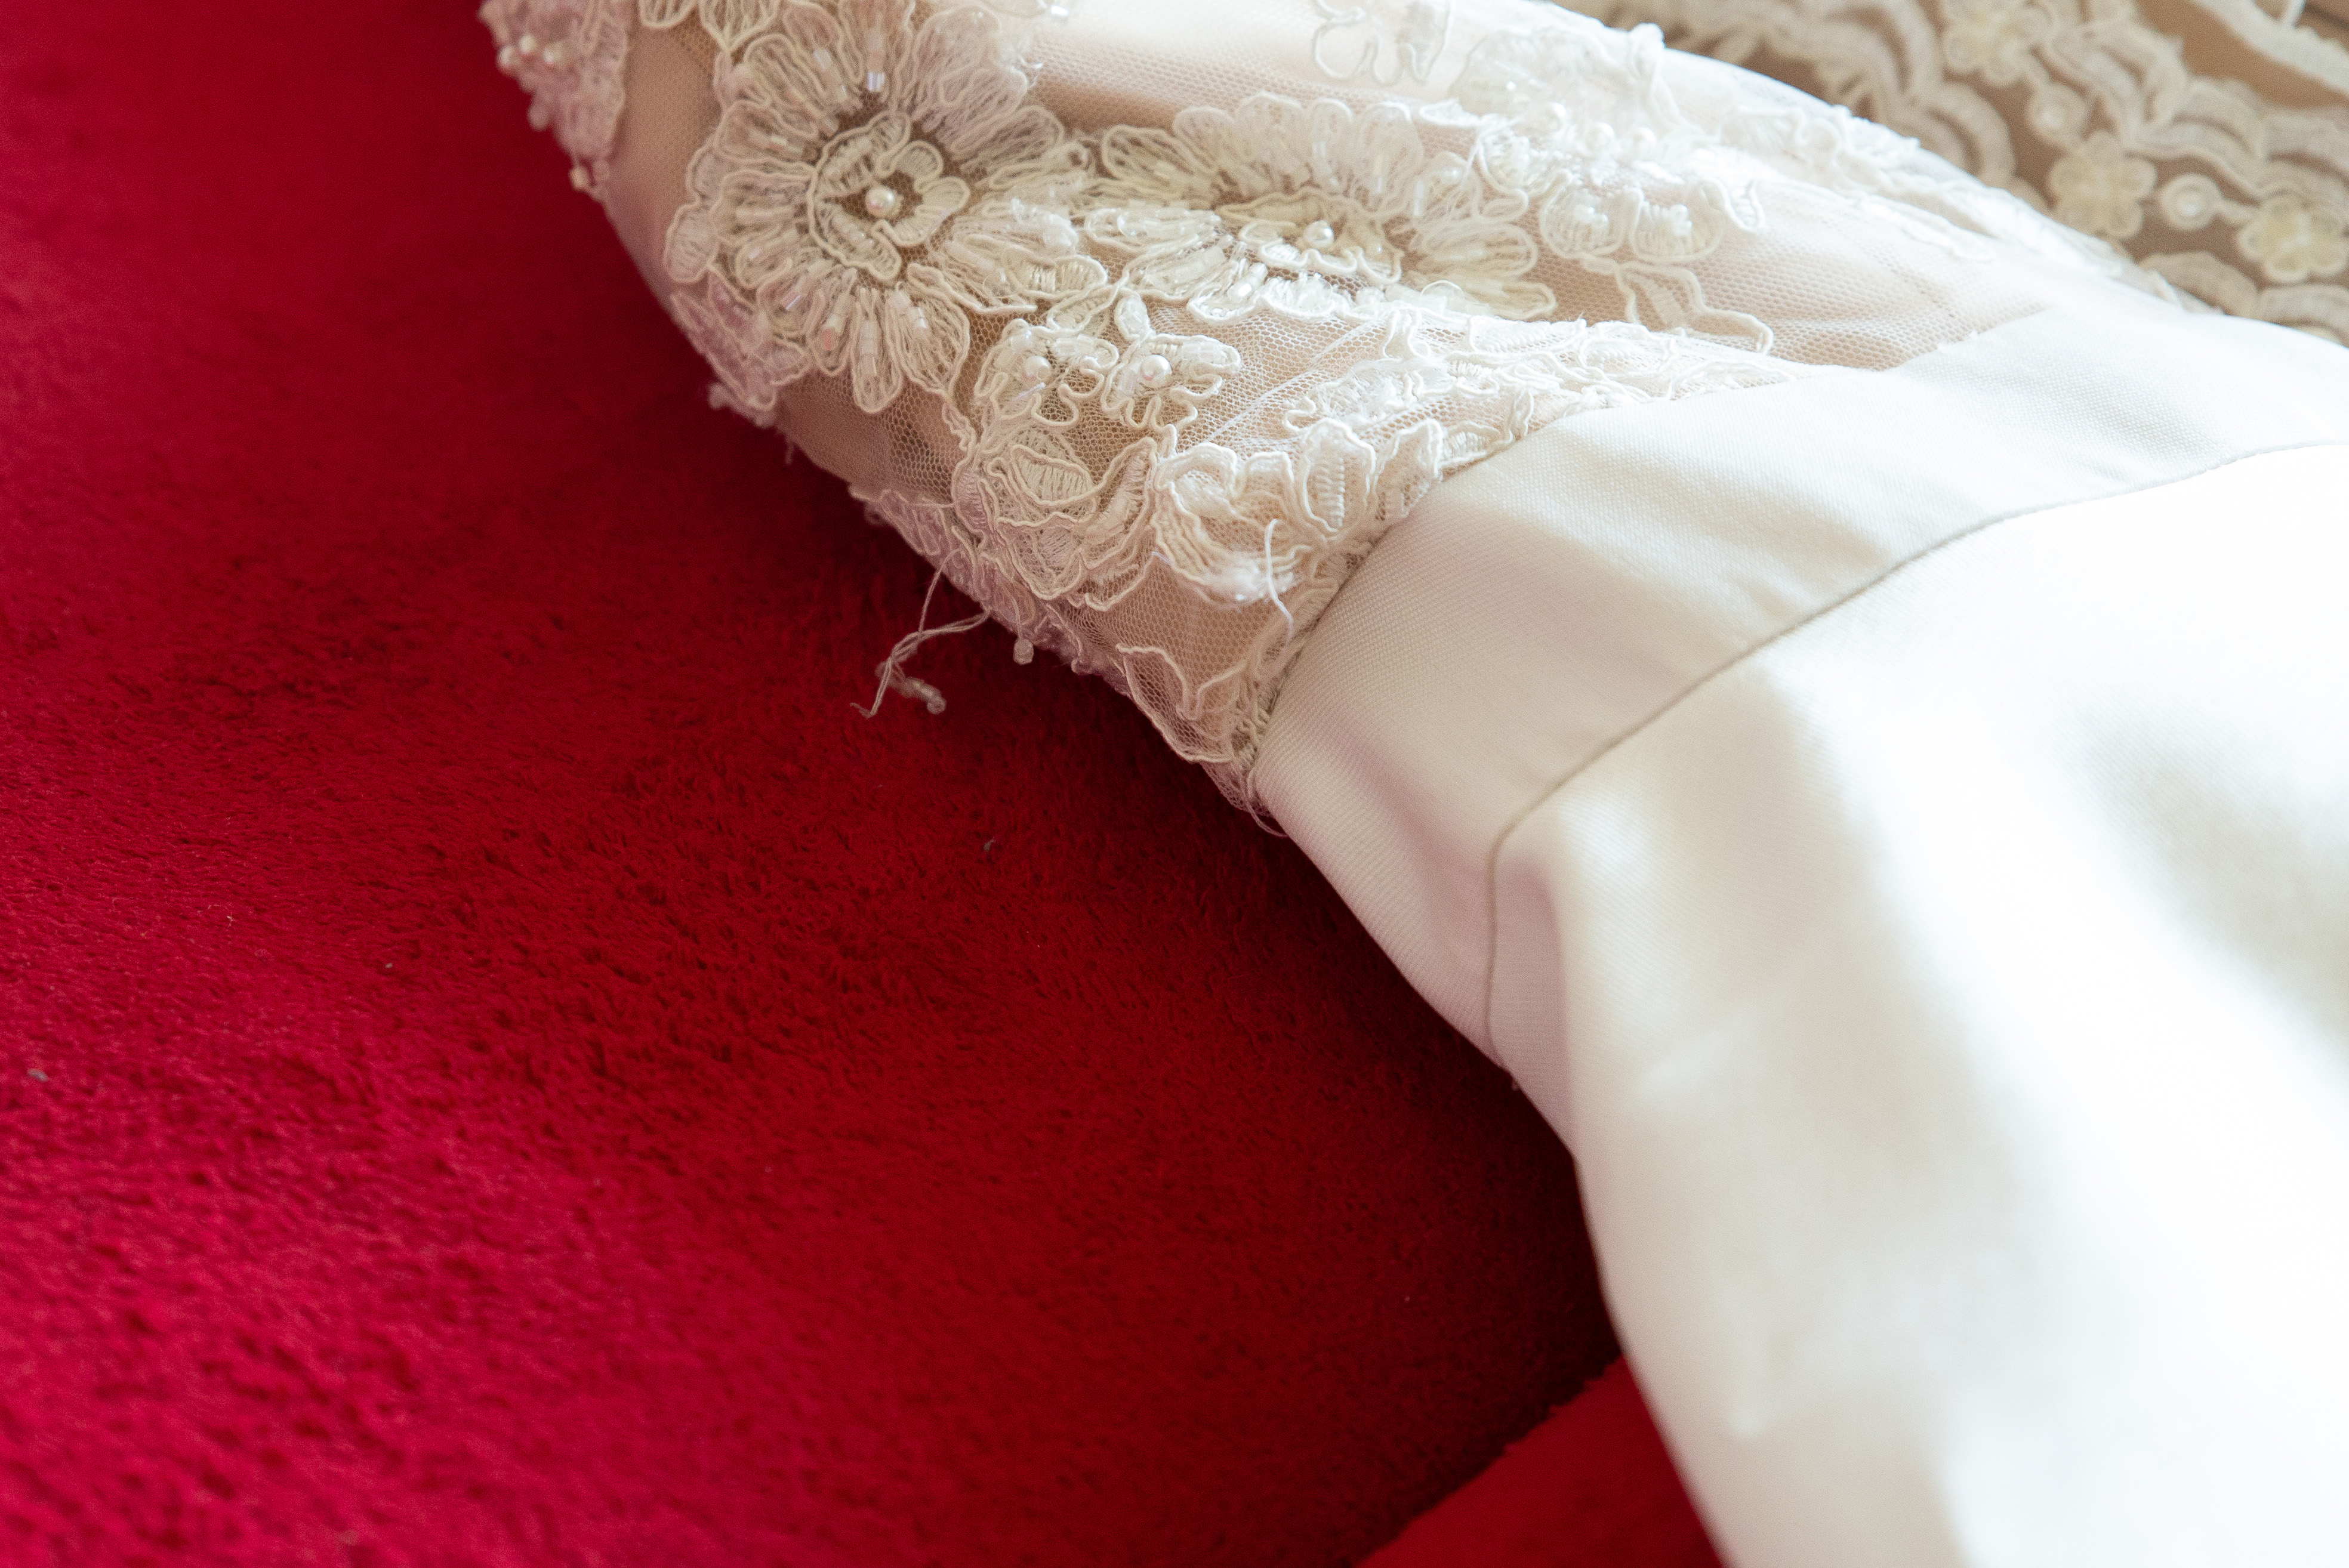 Nahaufnahme eines zerrissenen Hochzeitskleides | Quelle: Shutterstock